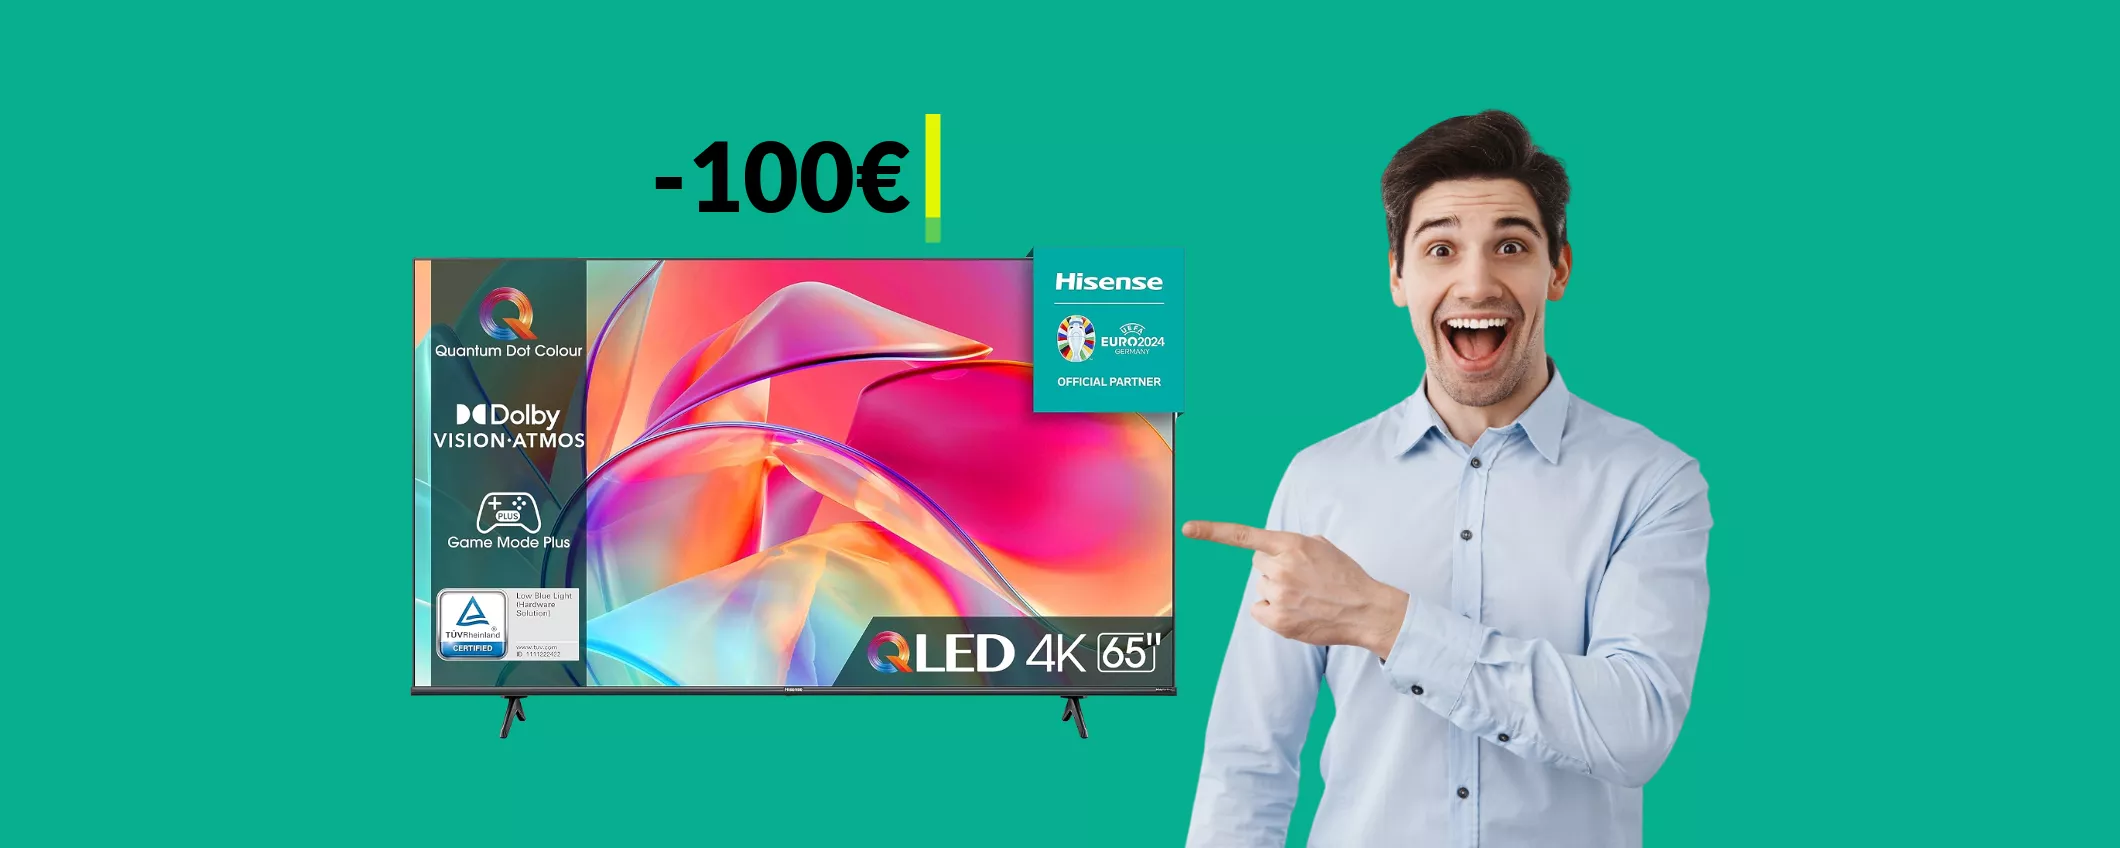 Smart TV 4K 65'' Hisense: imperdibile con lo SCONTO di 100€